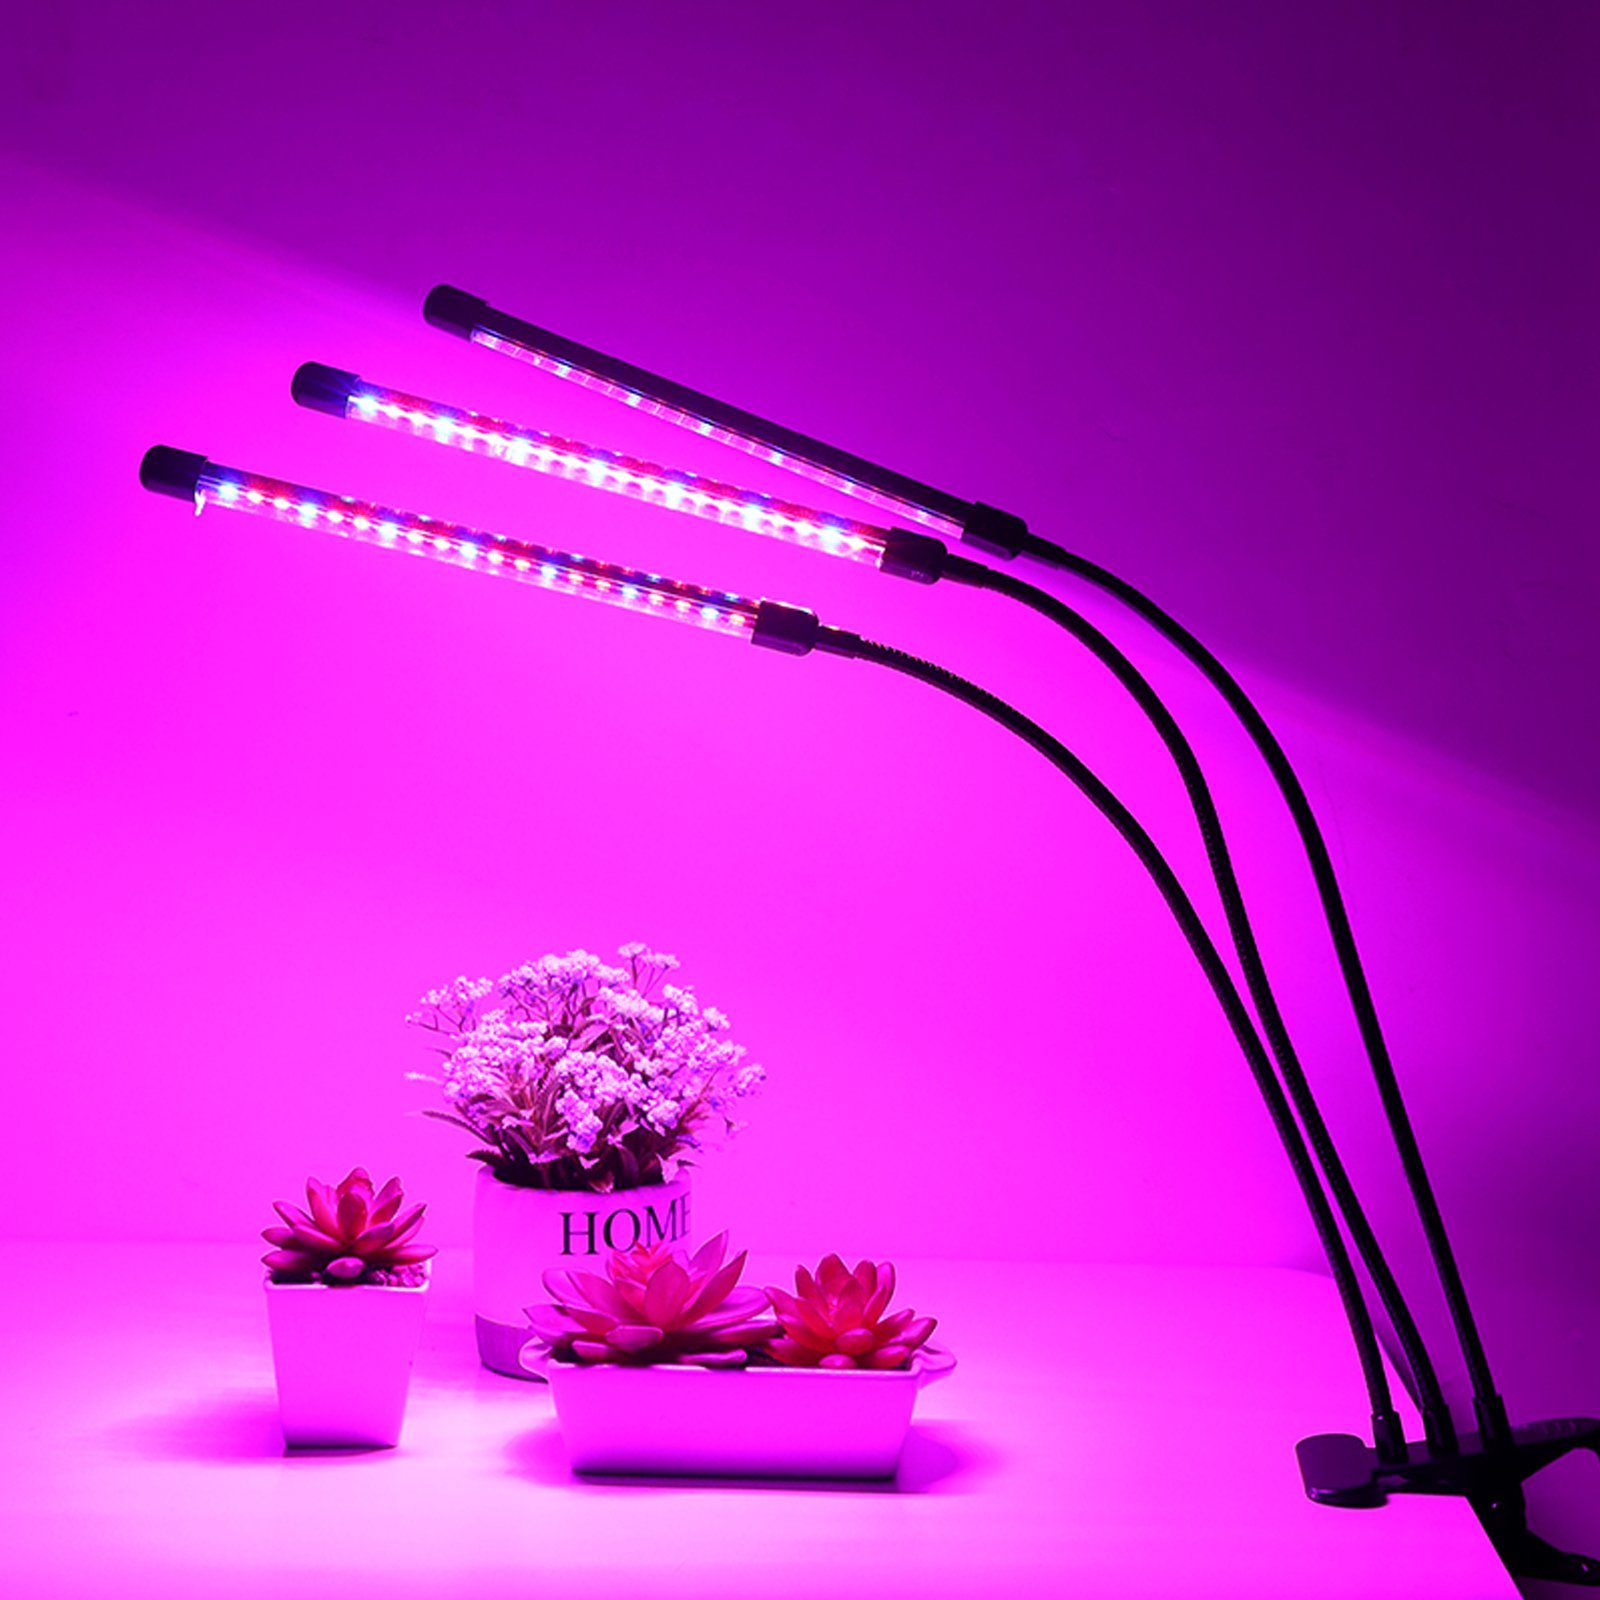 Clanmacy Pflanzenlampe 3 Kopf LED Wachstumslampe Grow 10 Modus, Dimmbar 3 Helligkeitsstufen Licht Vollspektrum 30W Pflanzenlicht mit Light